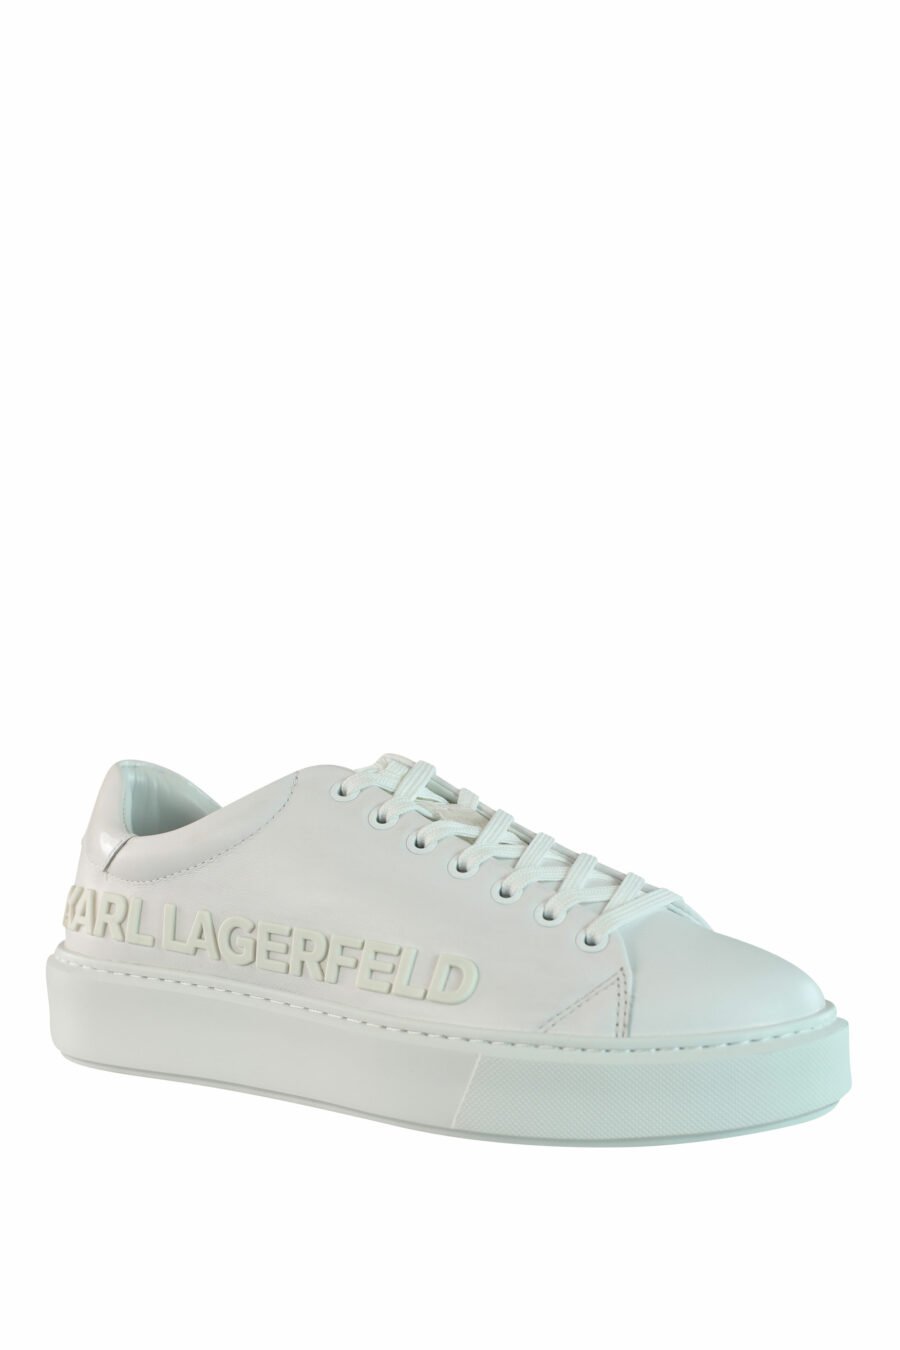 Zapatillas blancas "max kup" con logo blanco - IMG 0964